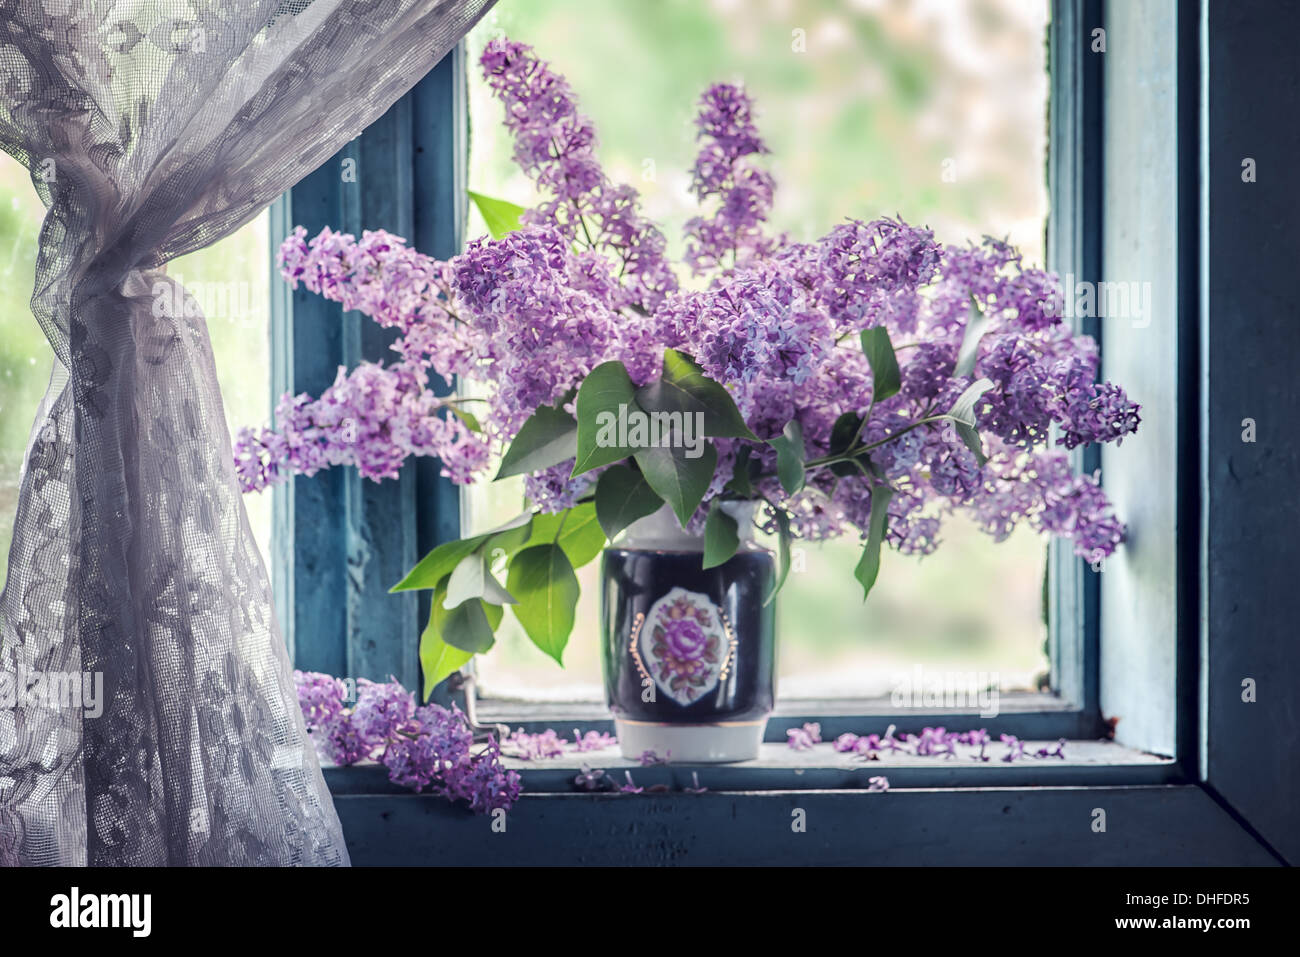 Lila flores en ventanas antiguas Foto de stock